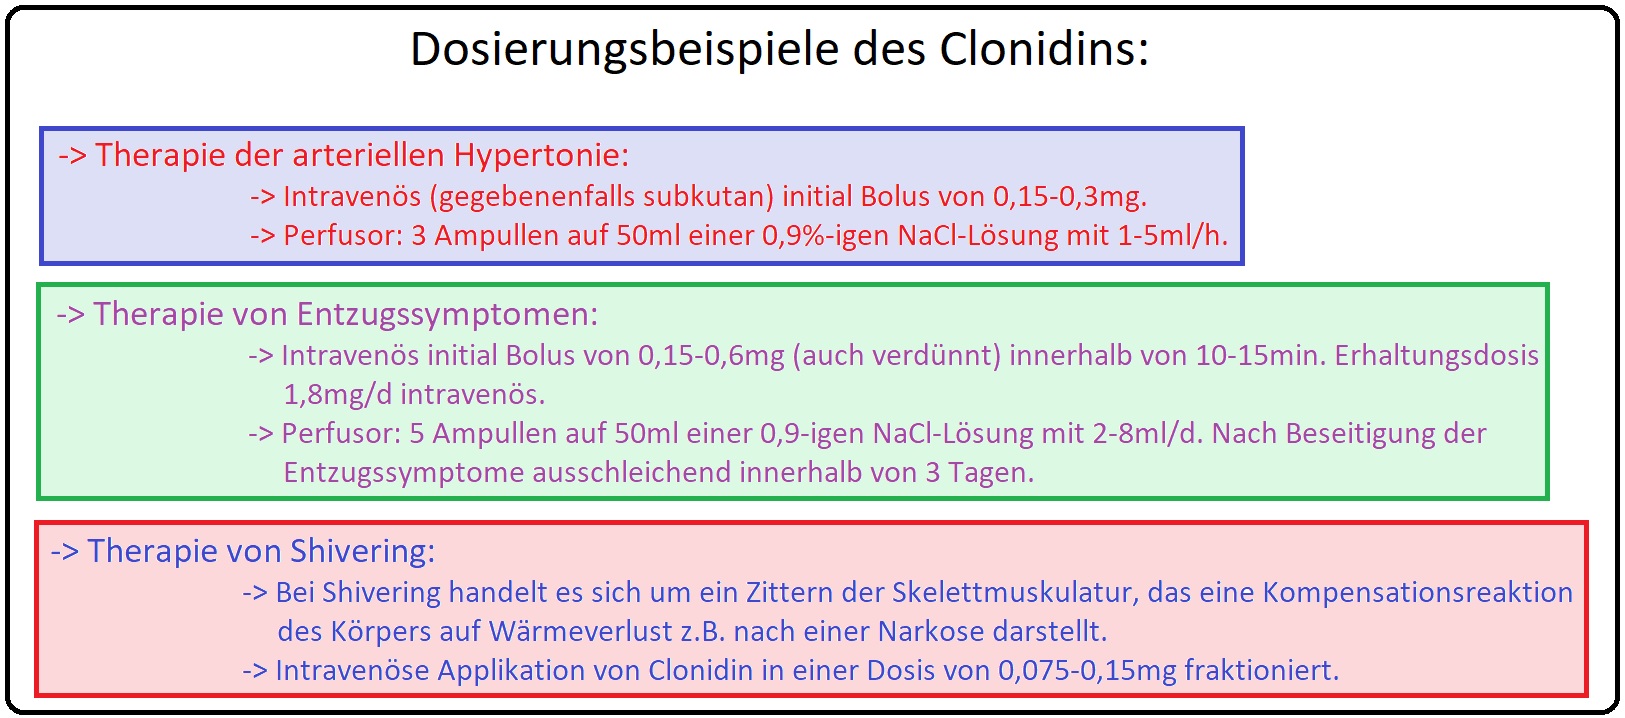 100 Dosierungsbeispiele des Clonidins